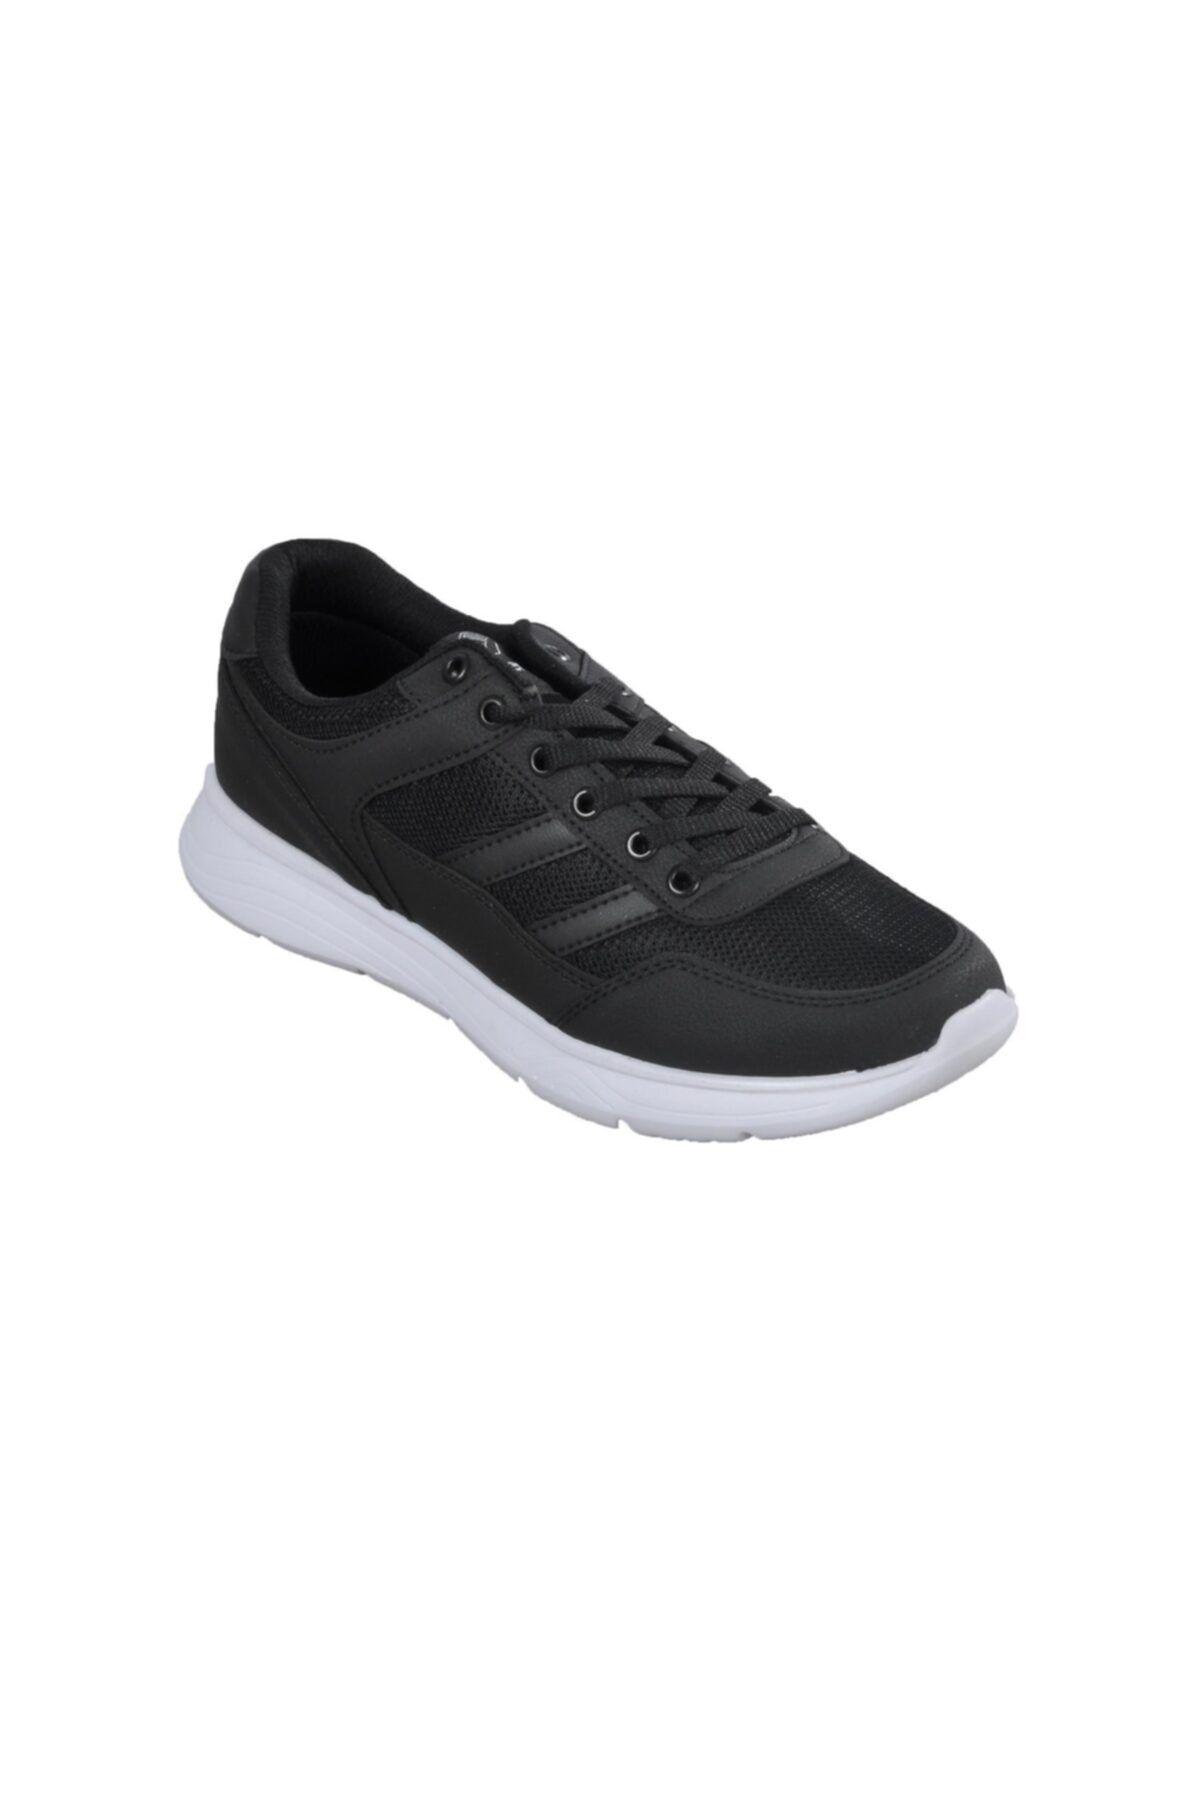 Venuma 257 Siyah-beyaz Erkek Spor Ayakkabı